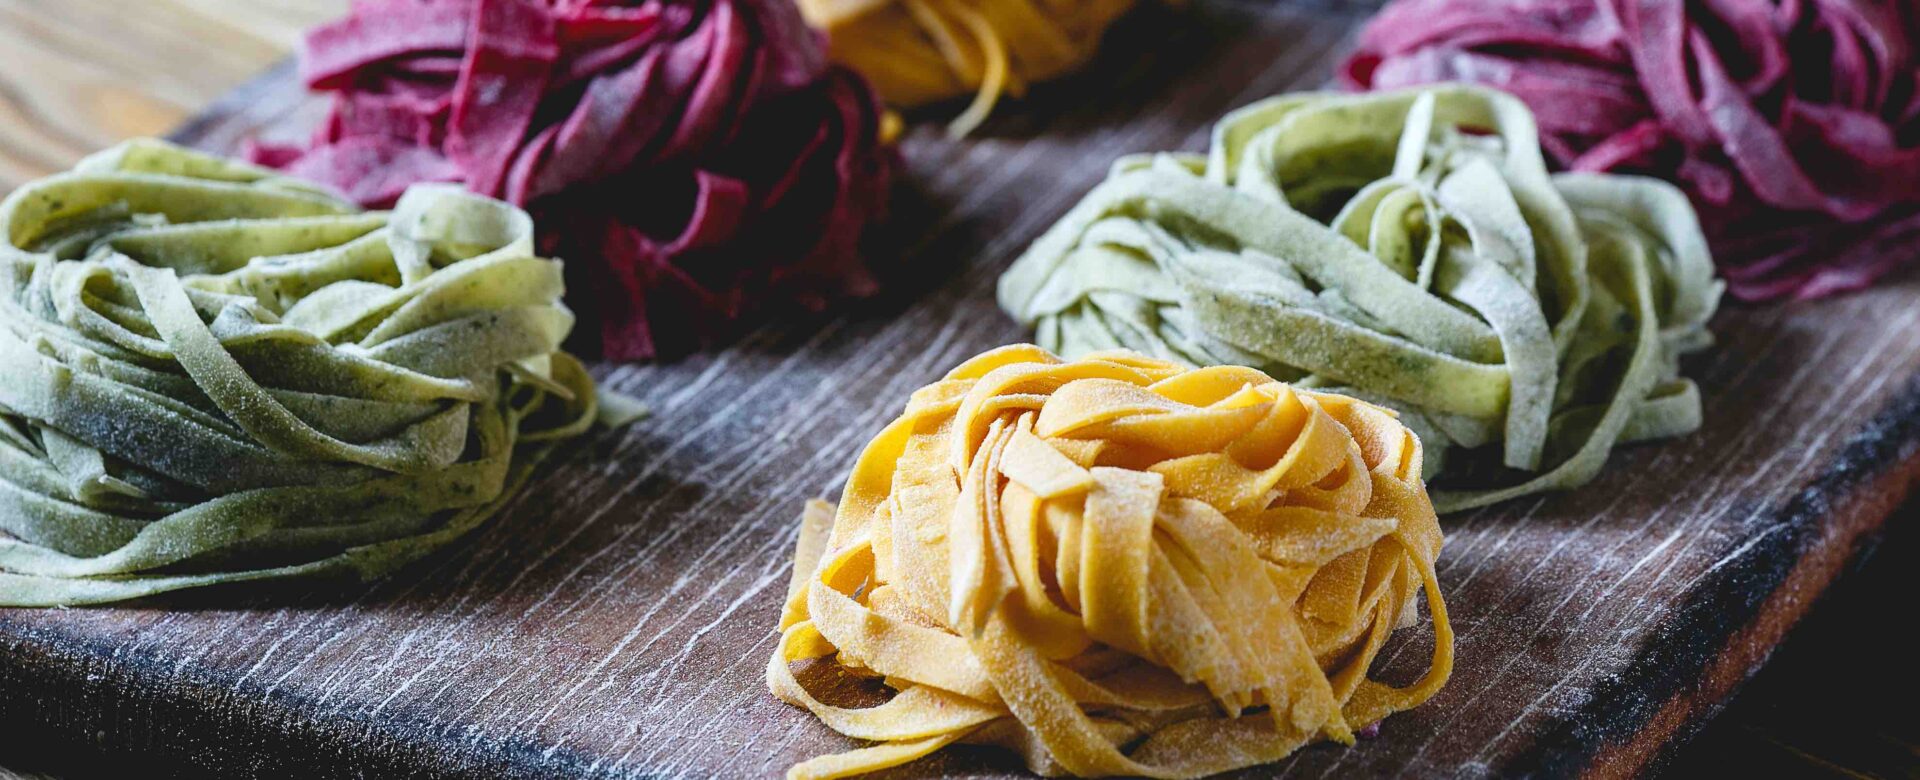 Gekleurde pasta het proberen waard?